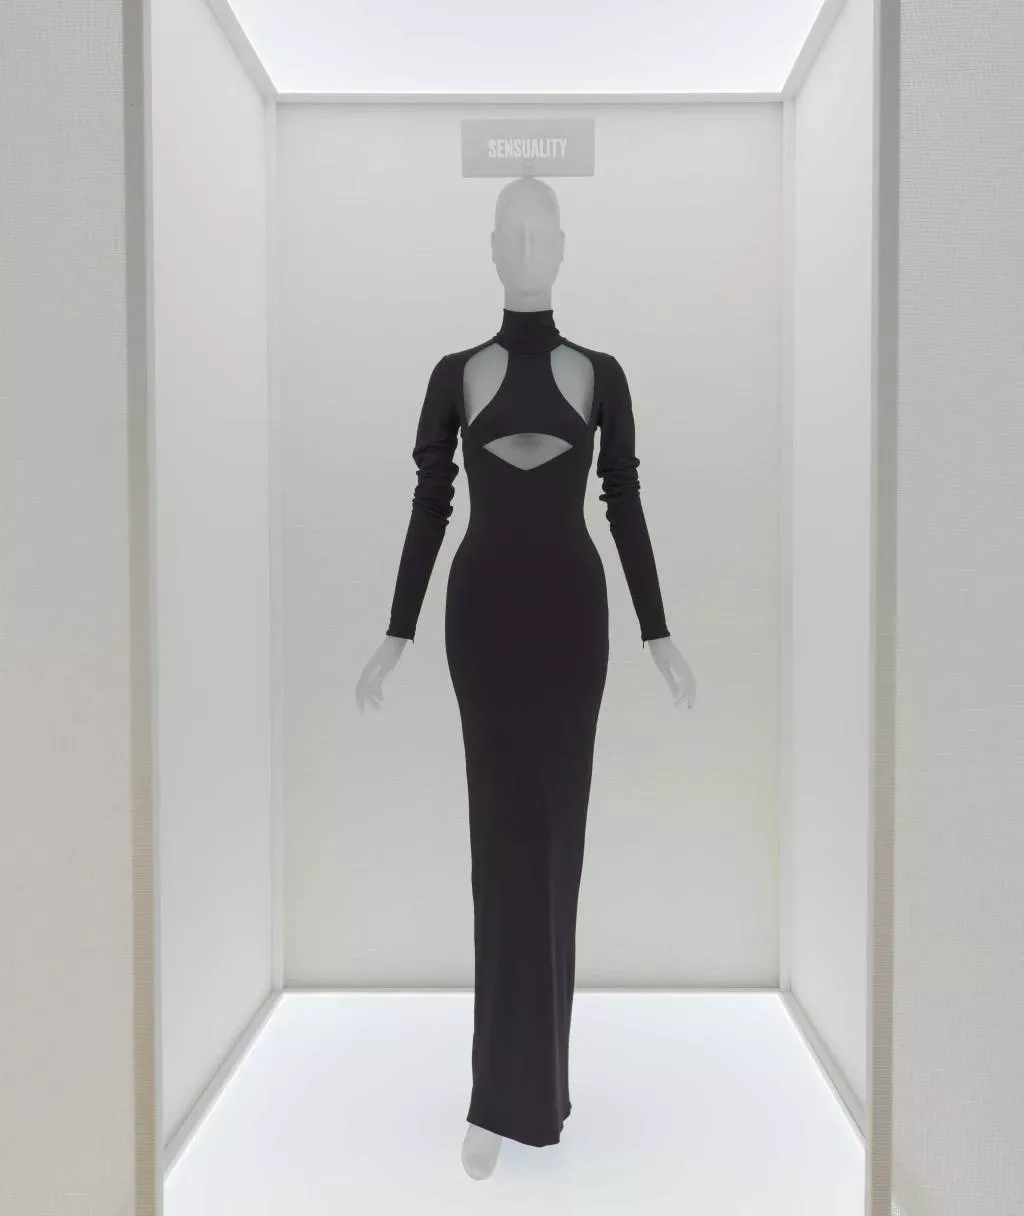 Сукню українського дизайнера виставлять в Музеї "Митрополит" у Нью-Йорку